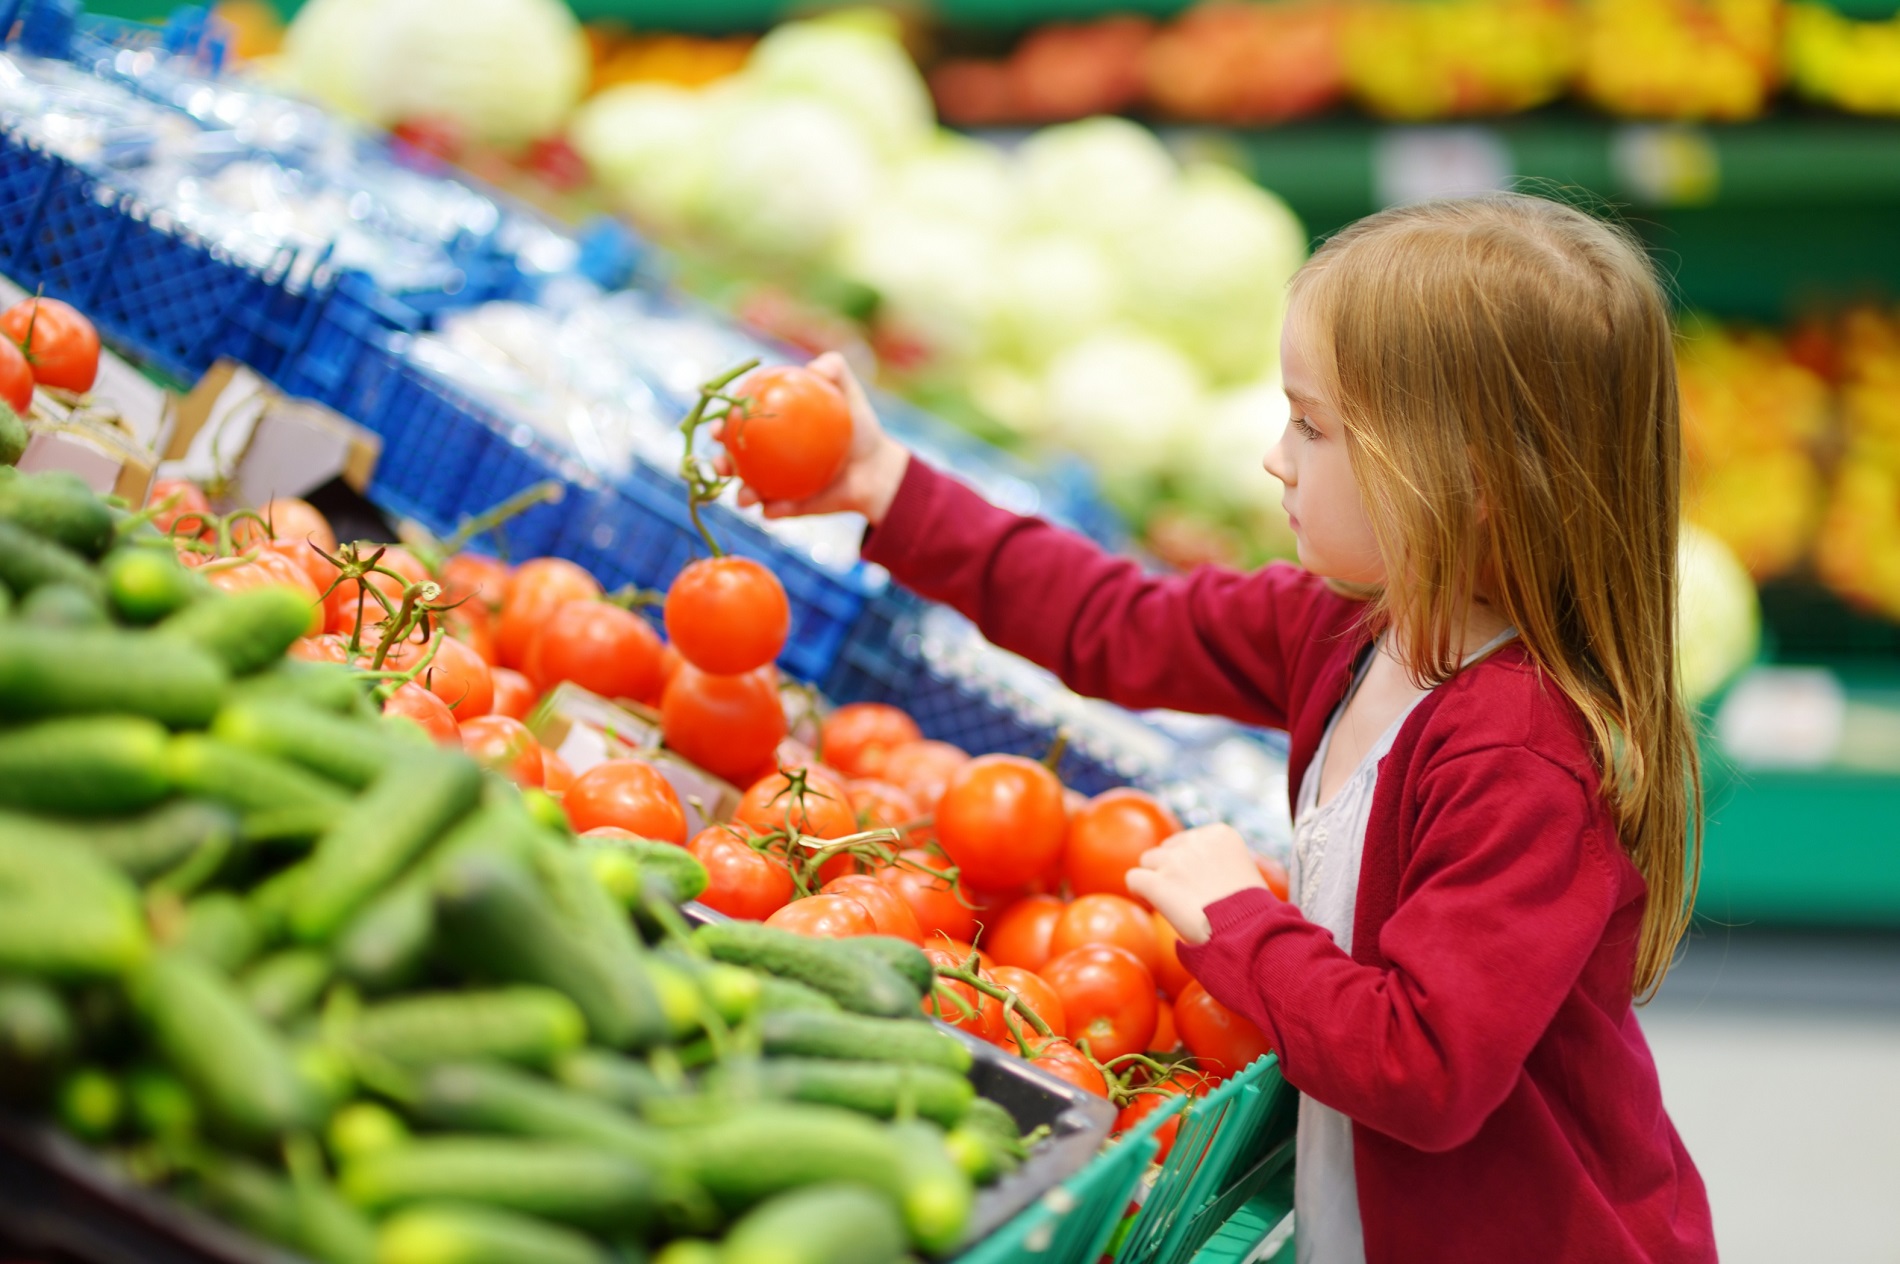 La sanidad vegetal como factor clave para garantizar los derechos de los consumidores